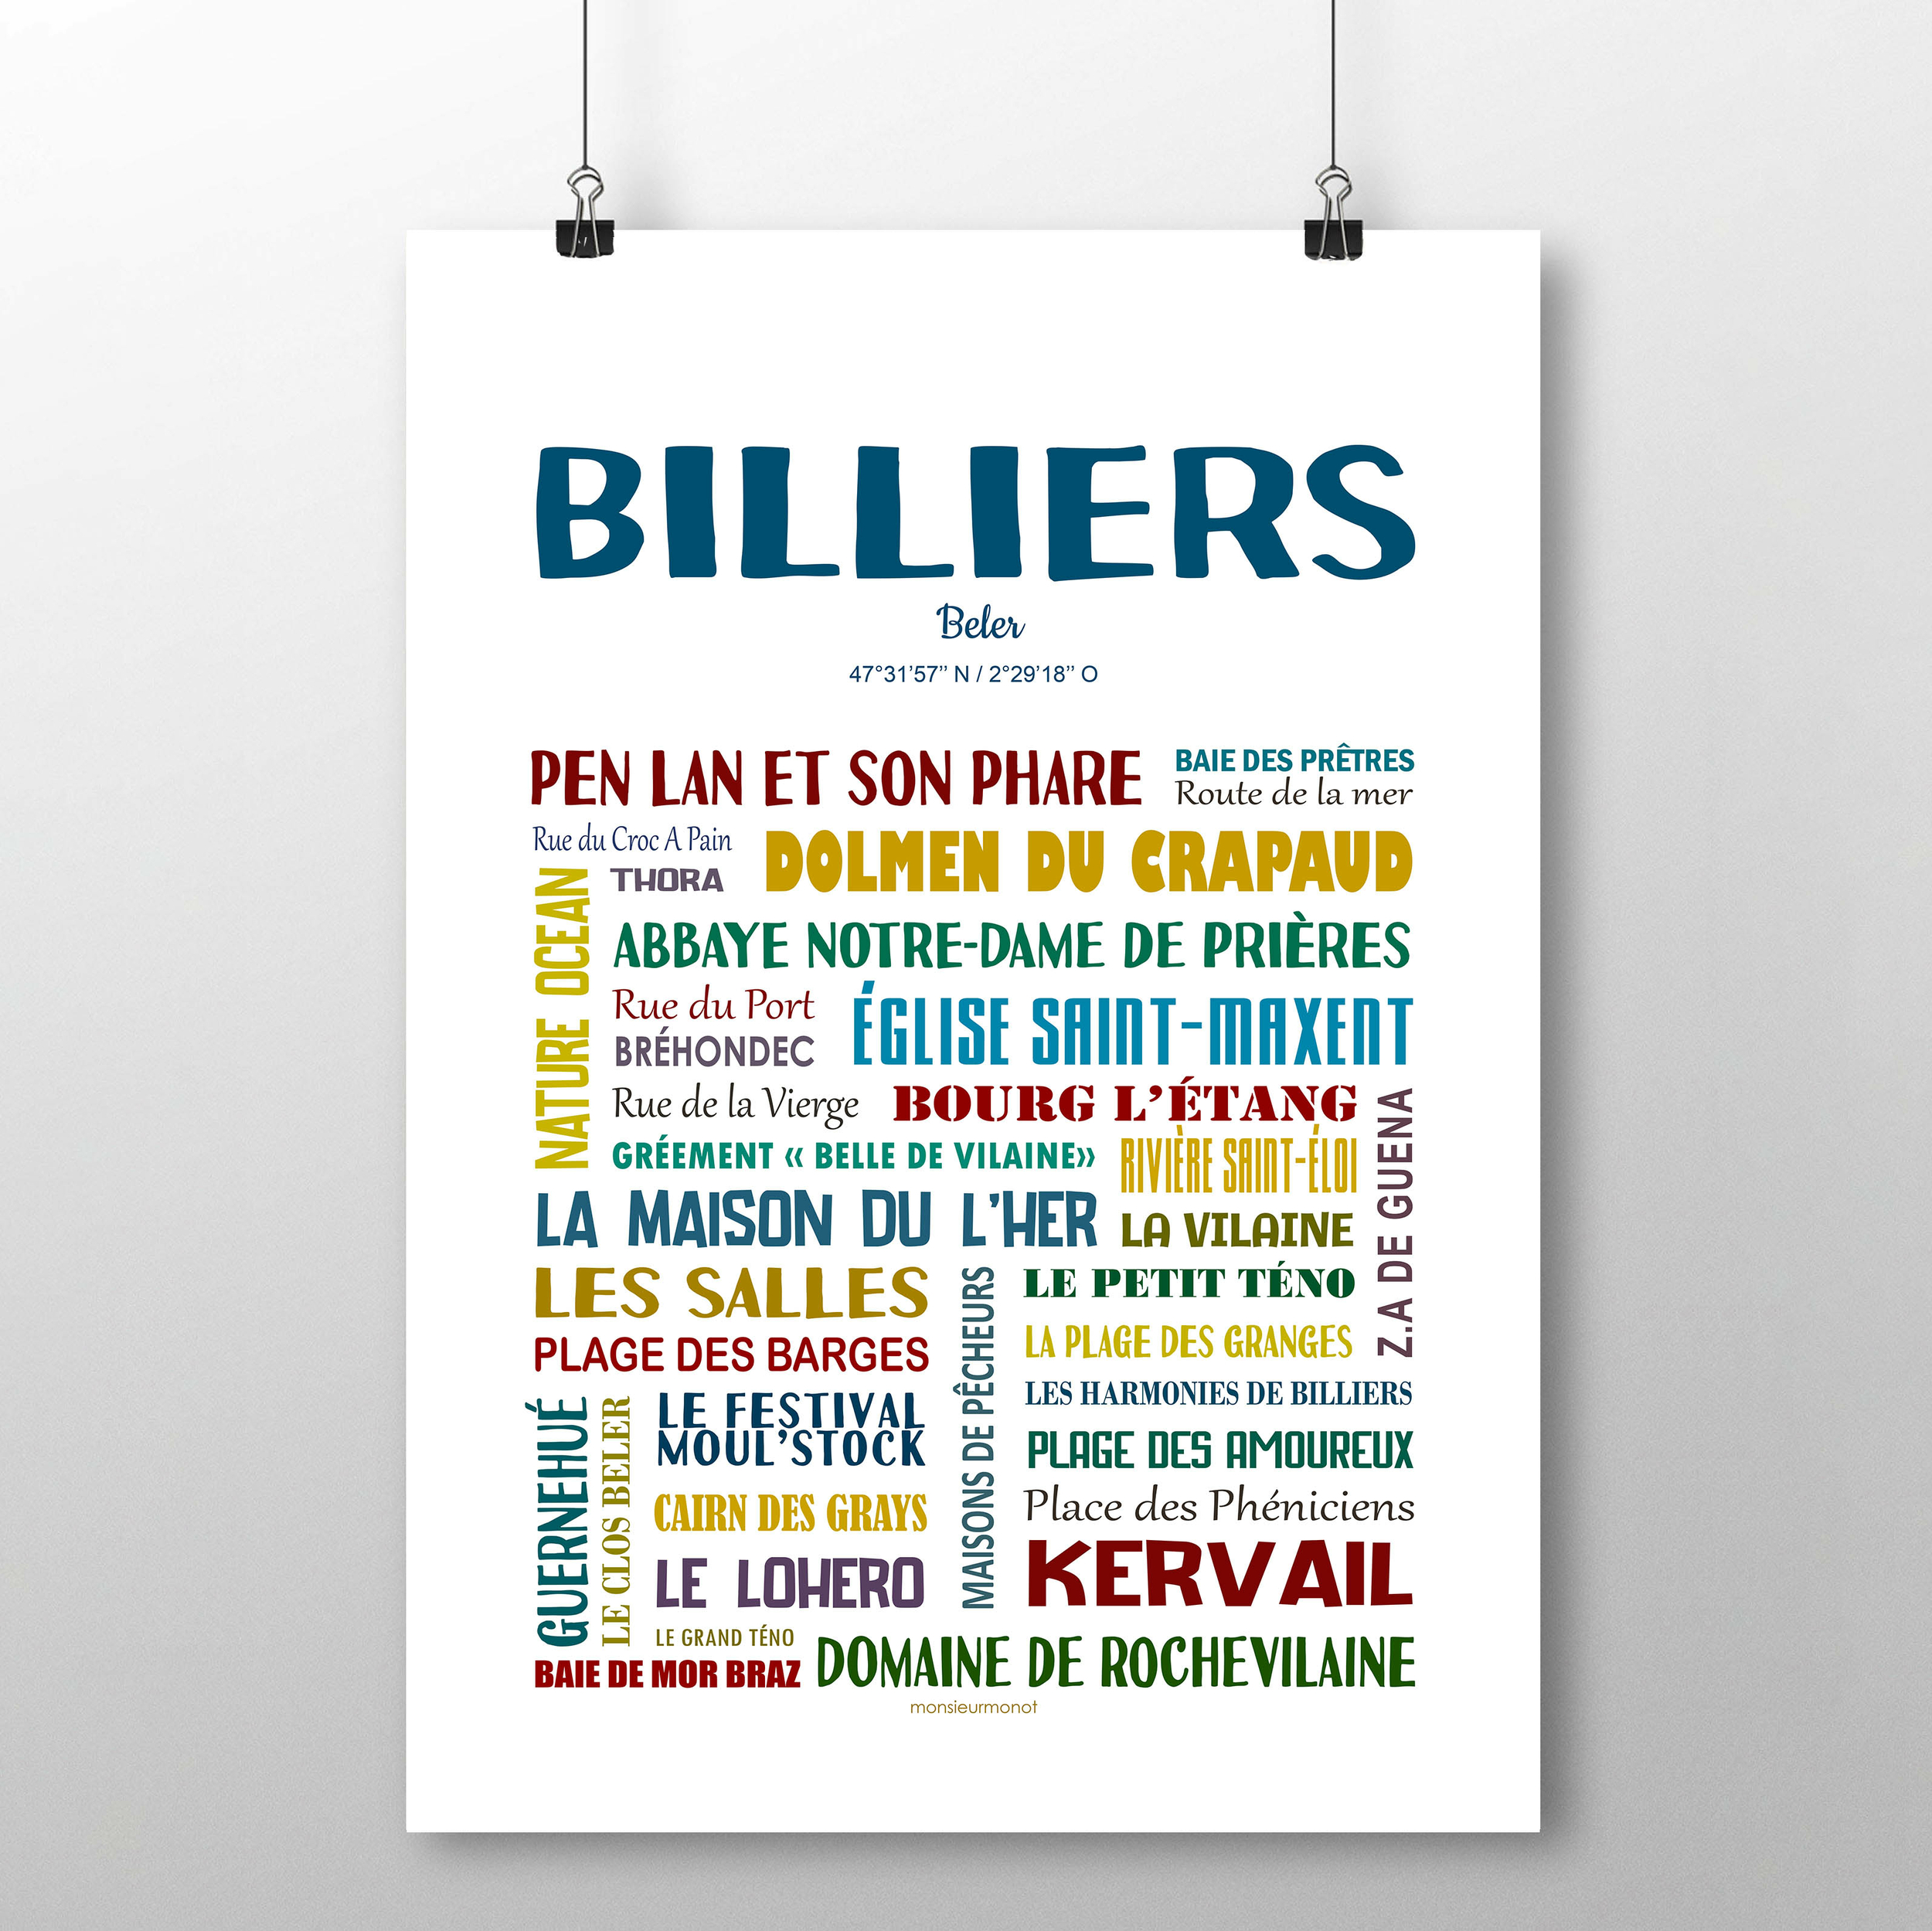 Billiers 2